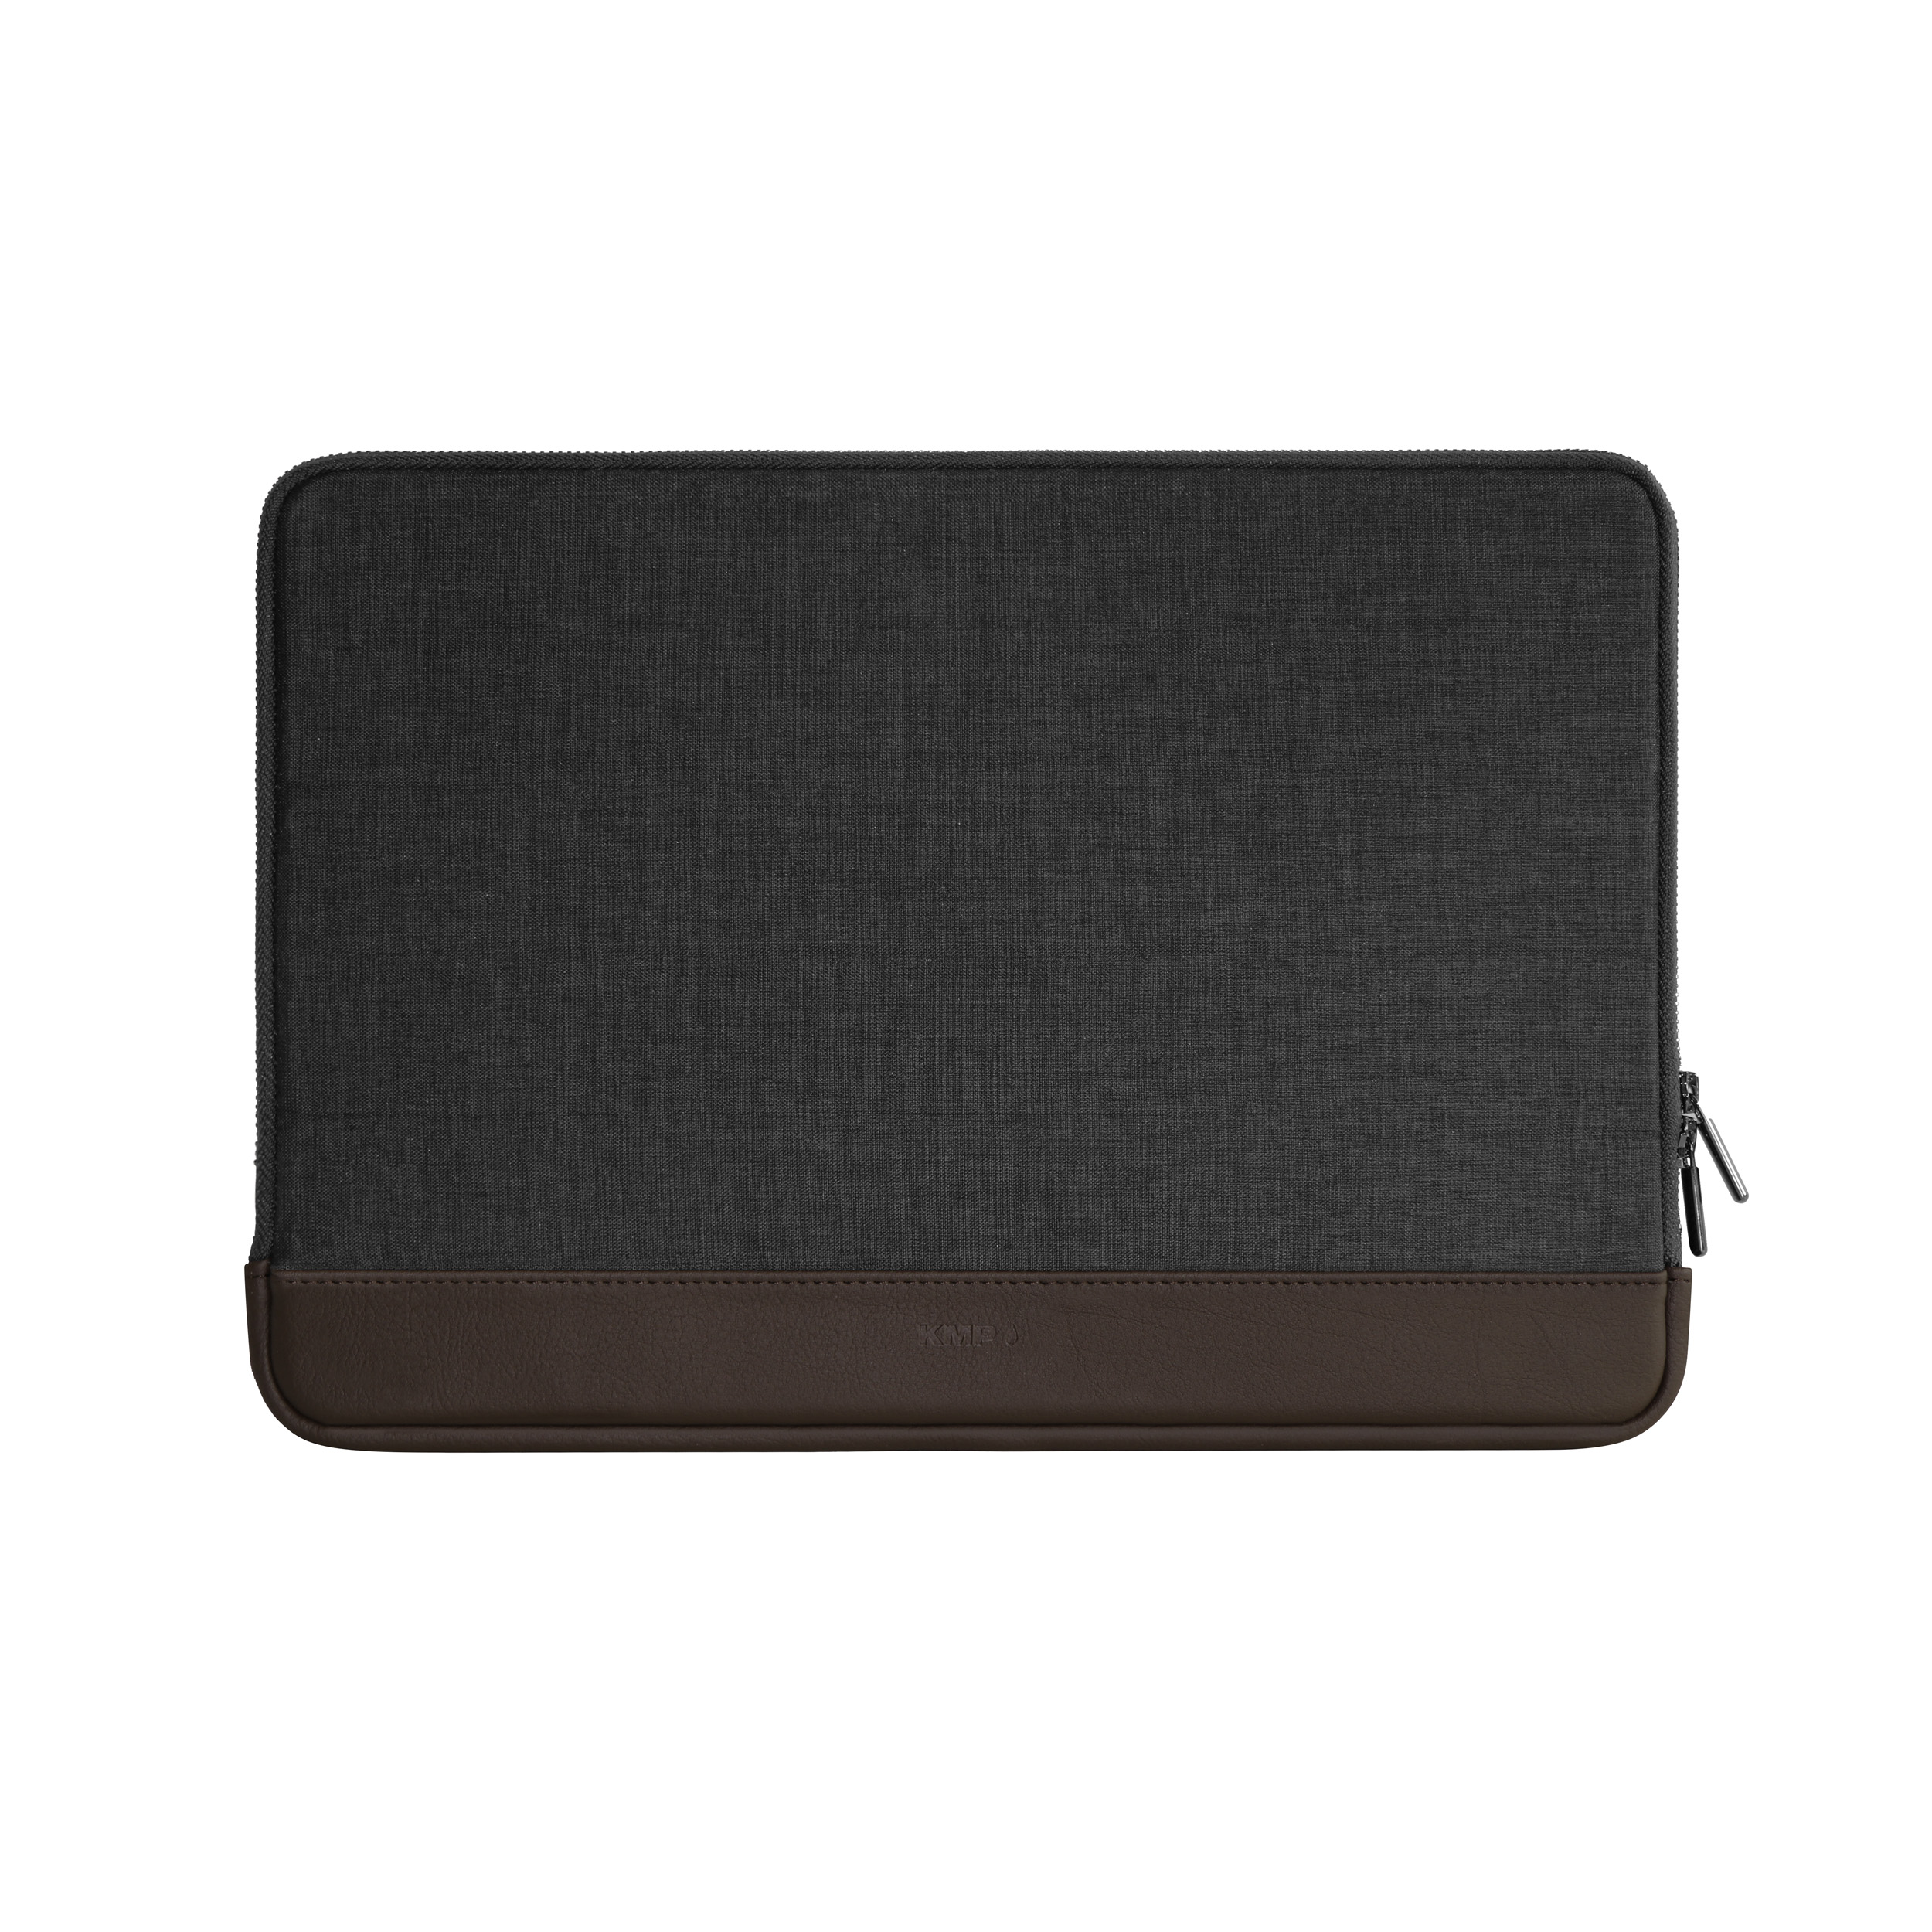 biobasiertes / MacBook Notebook für Sleeve Lederoptik, in Textil, für anthracite Apple Material Sleeve Anthracite/Brown pro 13 Sleeve brown KMP